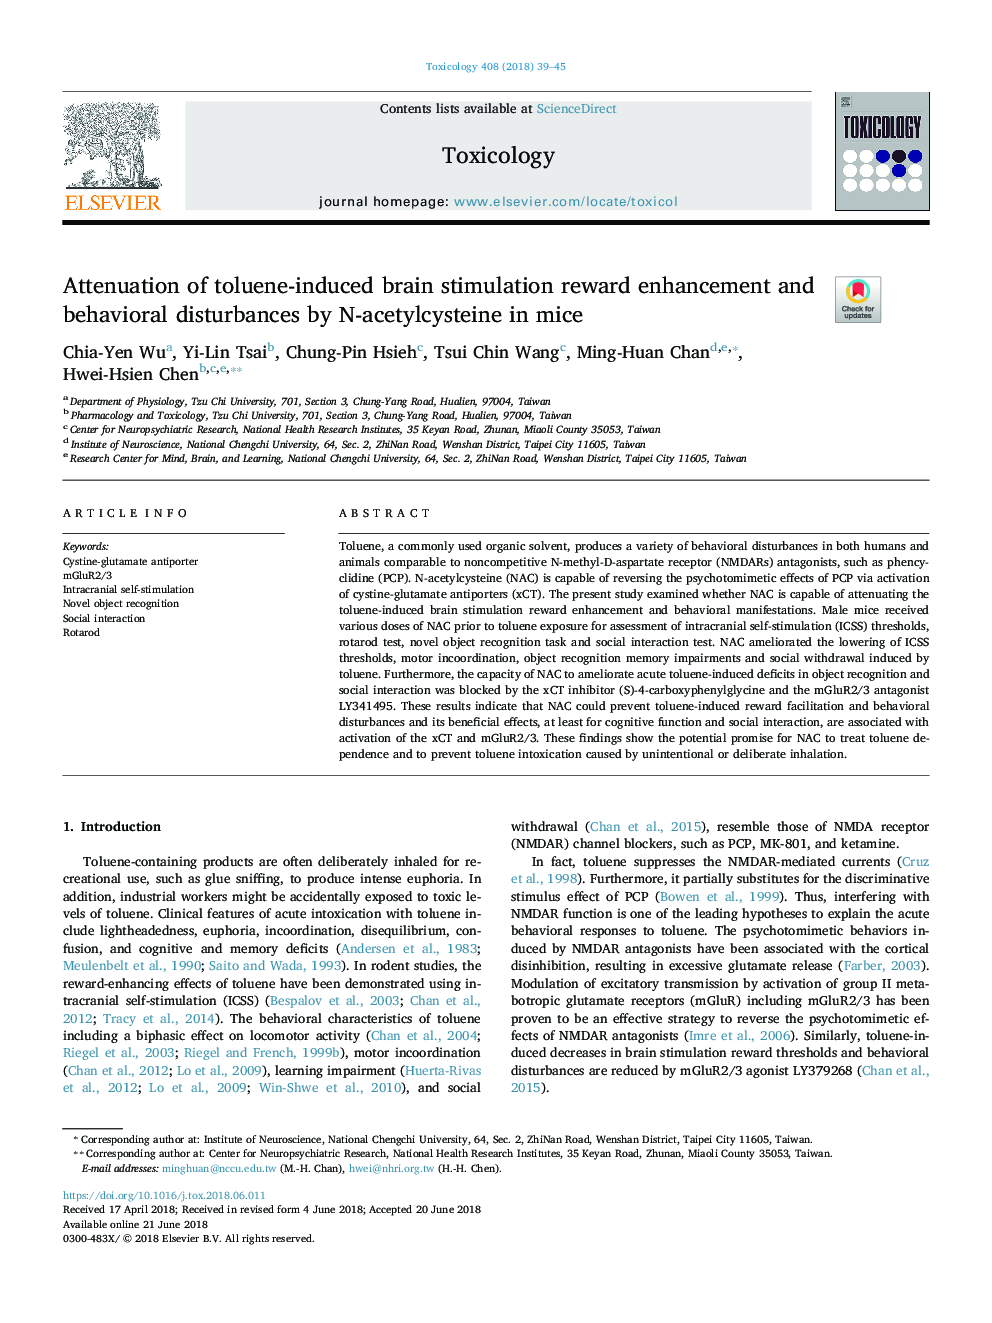 Attenuation of toluene-induced brain stimulation reward enhancement and behavioral disturbances by N-acetylcysteine in mice